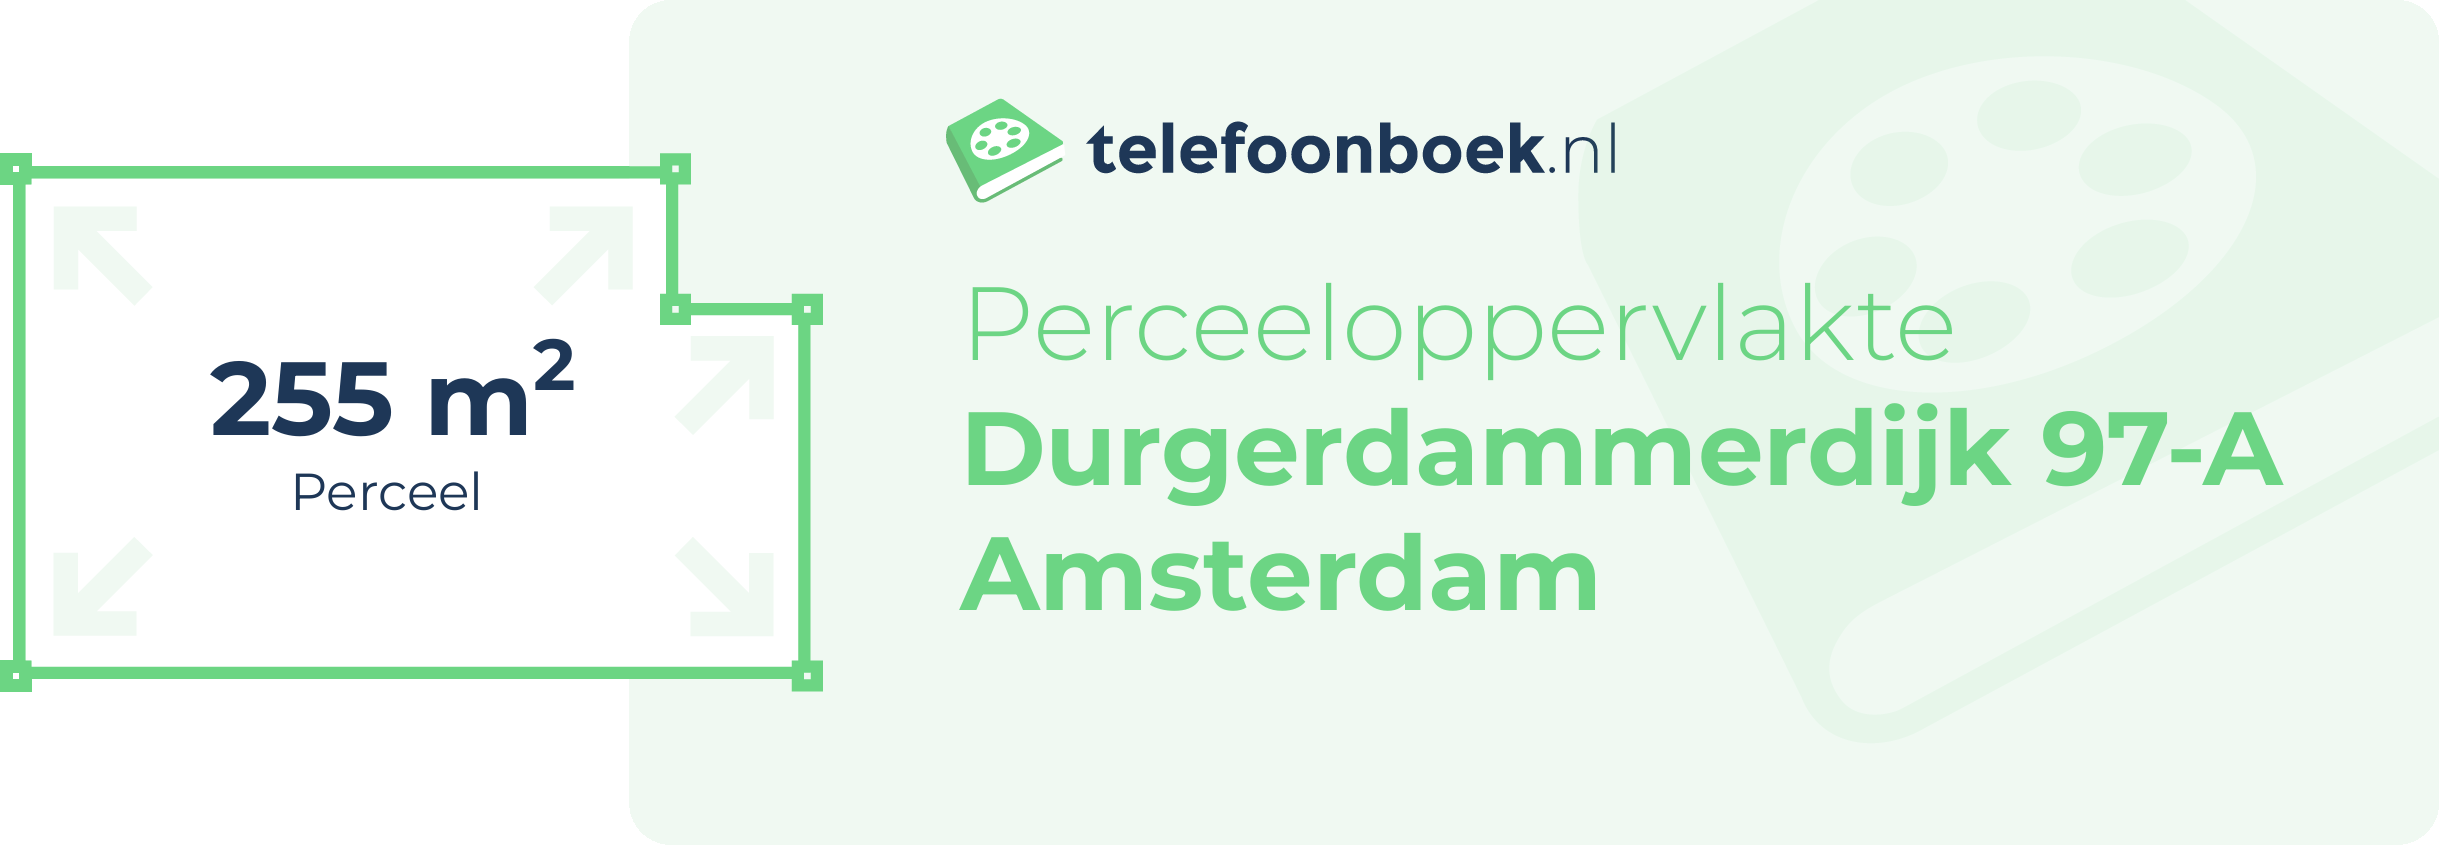 Perceeloppervlakte Durgerdammerdijk 97-A Amsterdam